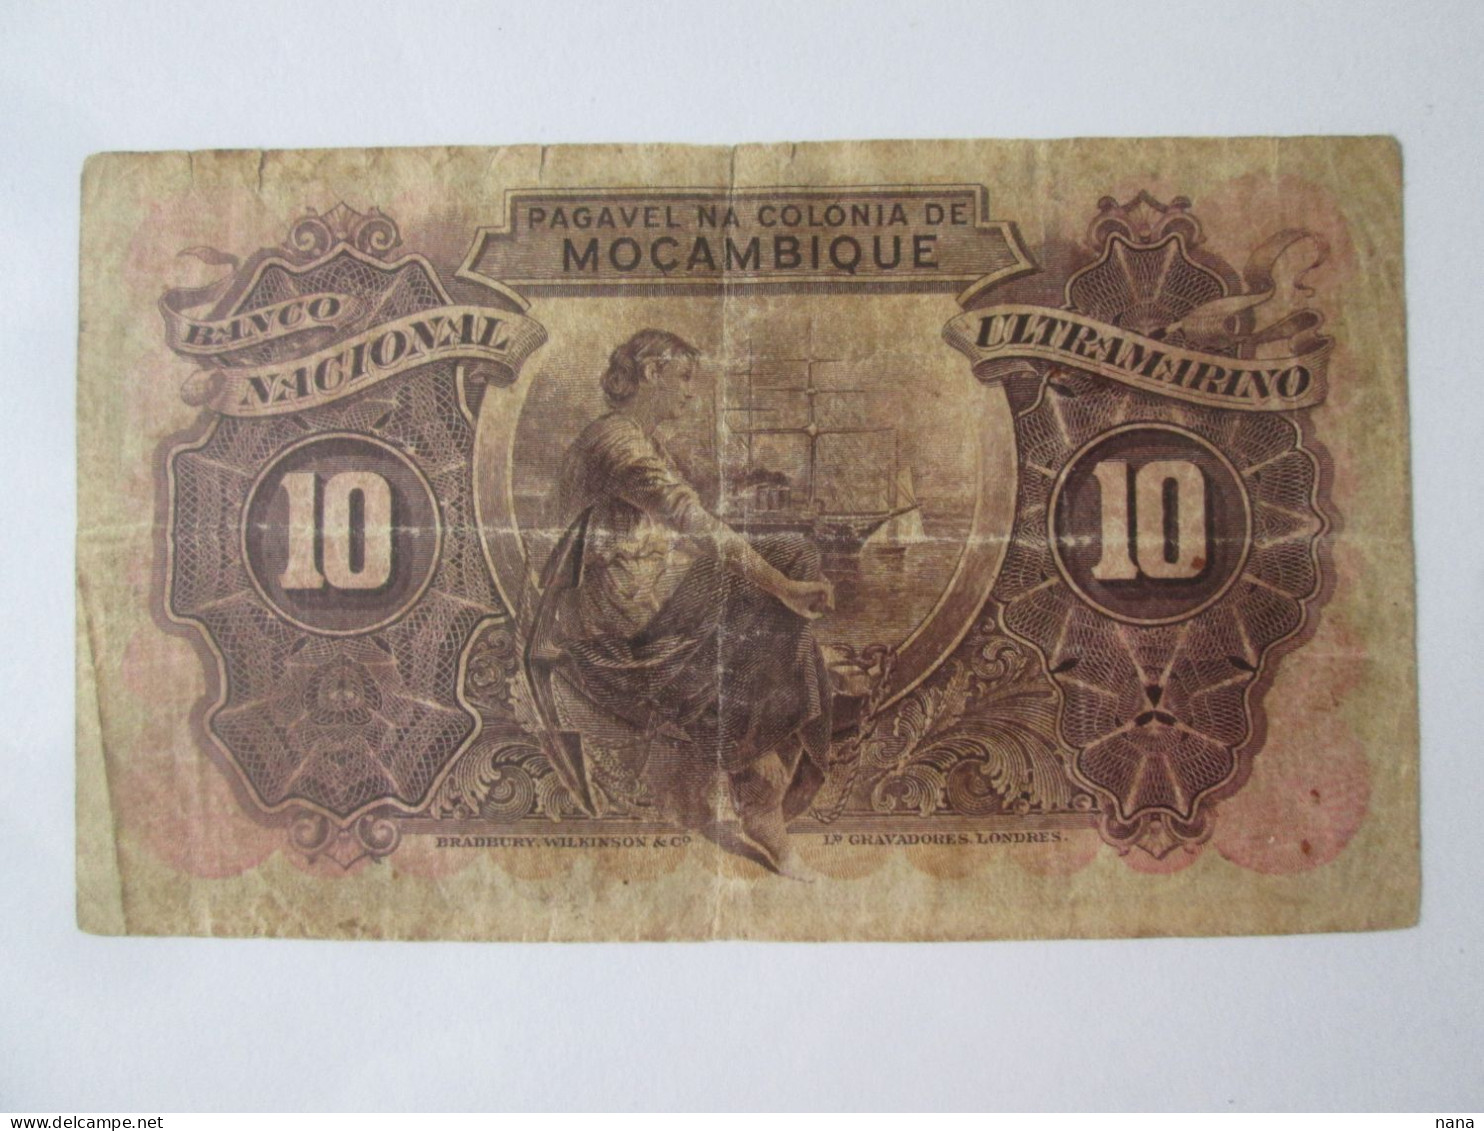 Rare! Mozambique 10 Escudos 1945 series 974,999 see pictures